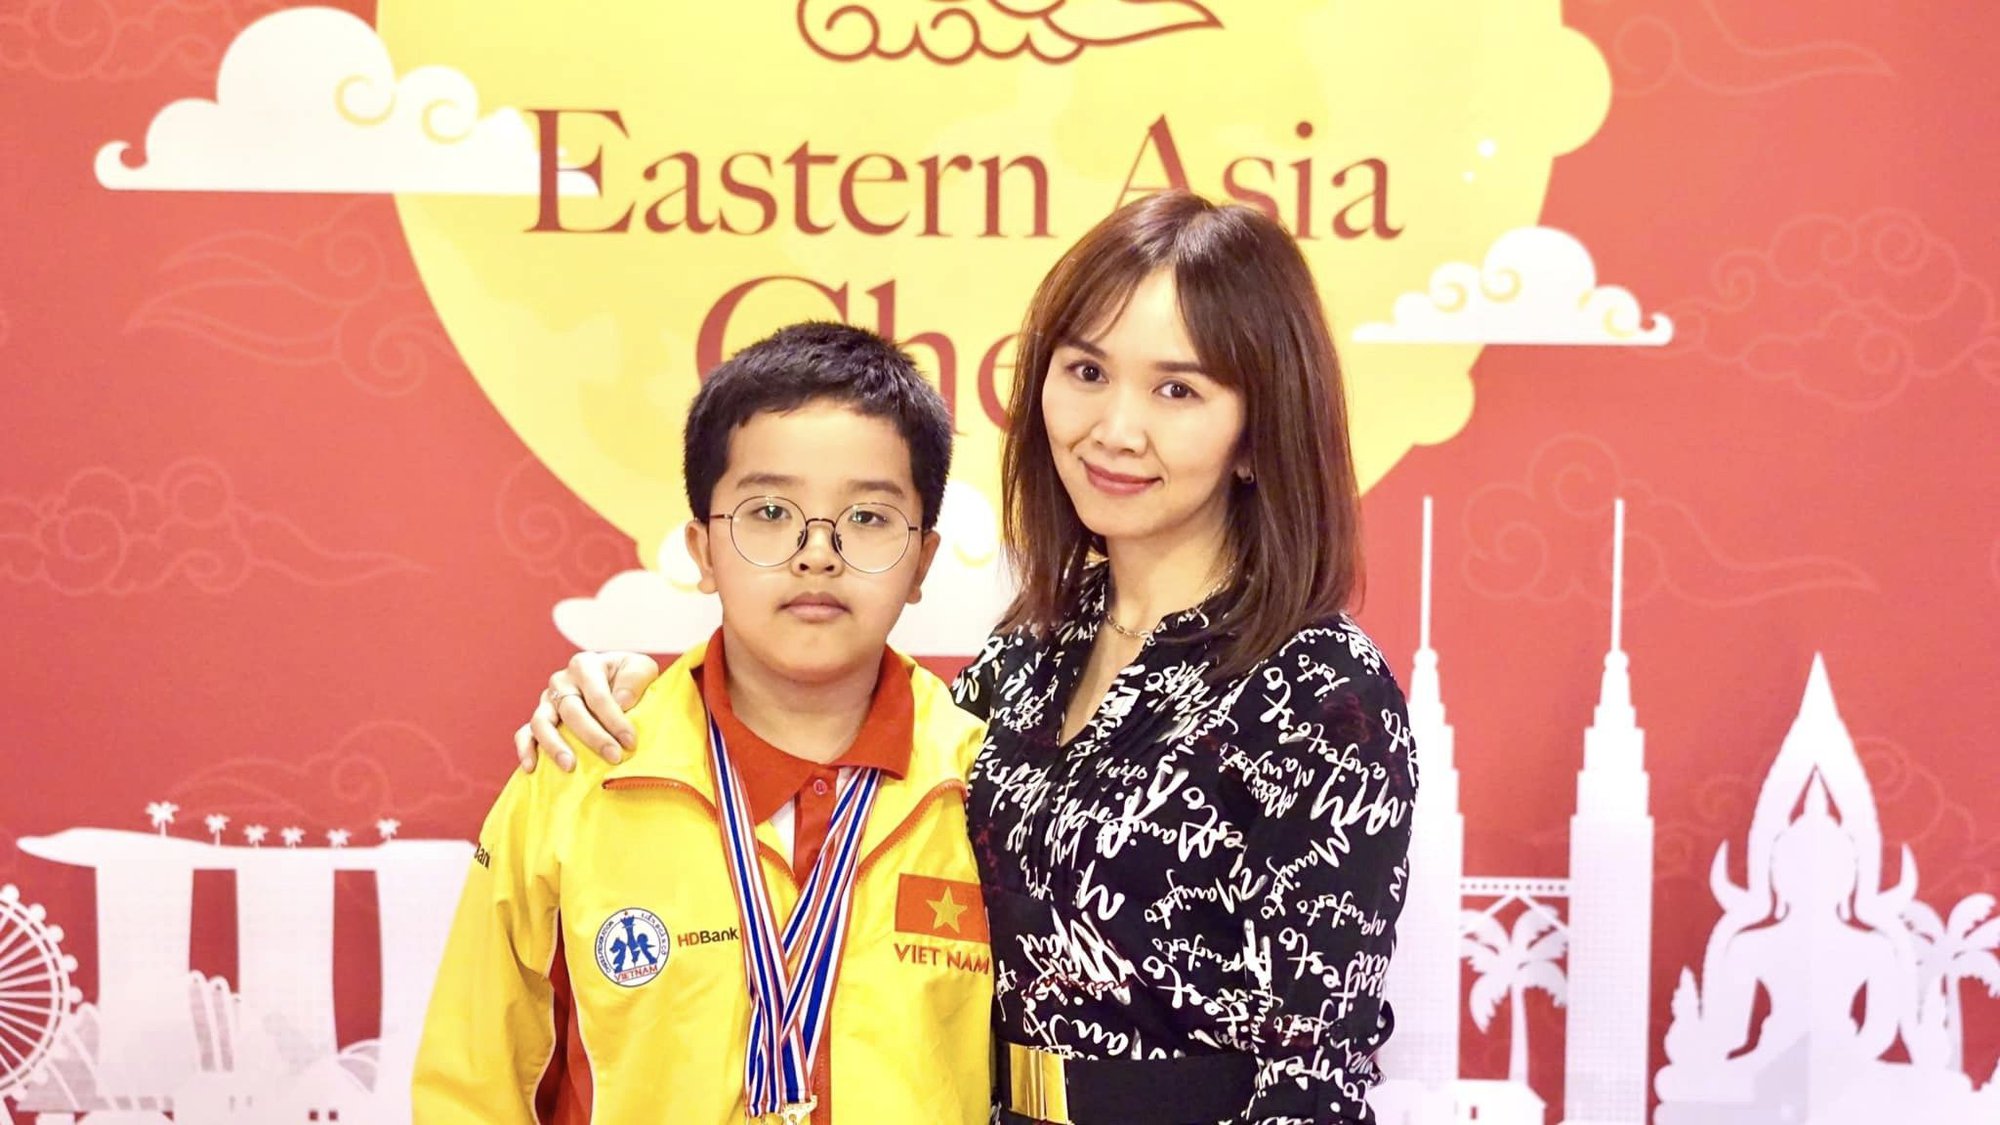 Cậu bé 11 tuổi ở Hà Nội: Không đếm xuể huy chương cờ vua, siêu tiếng Anh và đọc thành thạo lúc 5 tuổi - Ảnh 1.